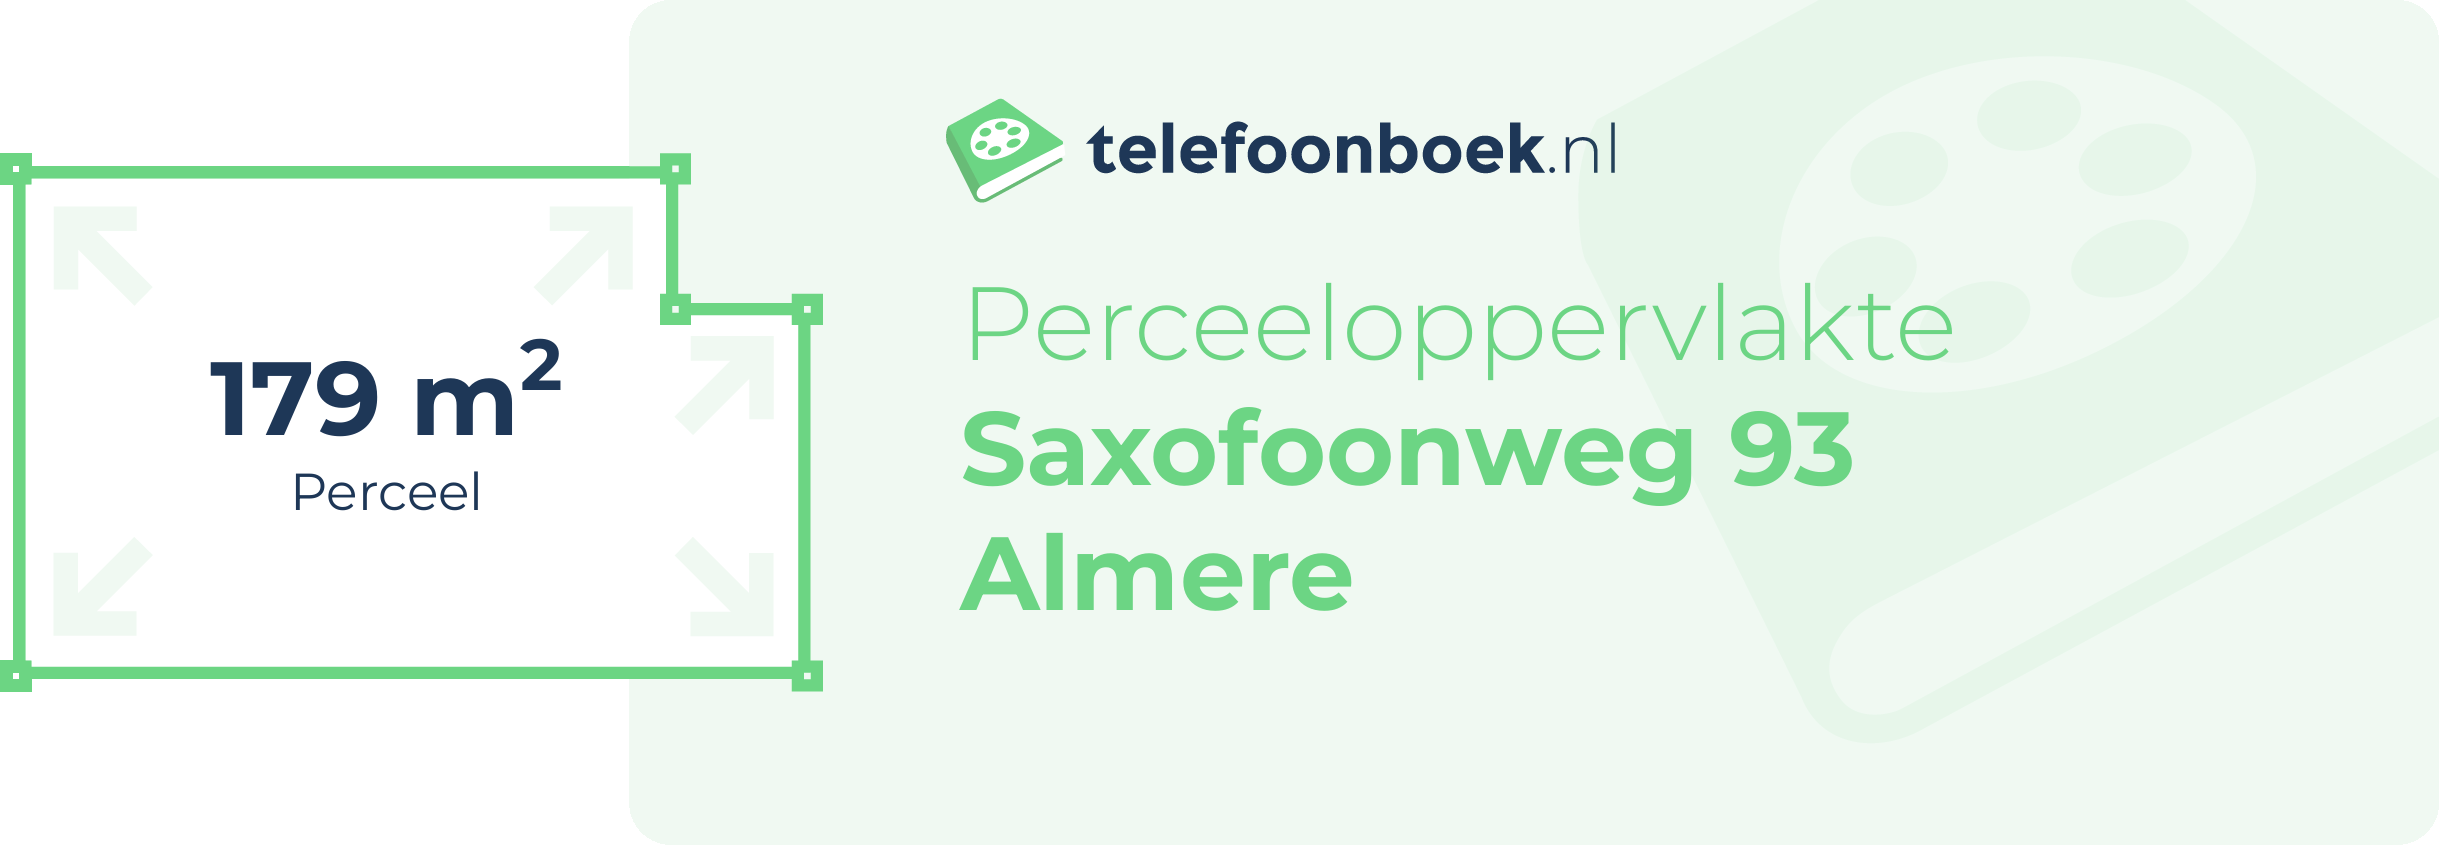 Perceeloppervlakte Saxofoonweg 93 Almere